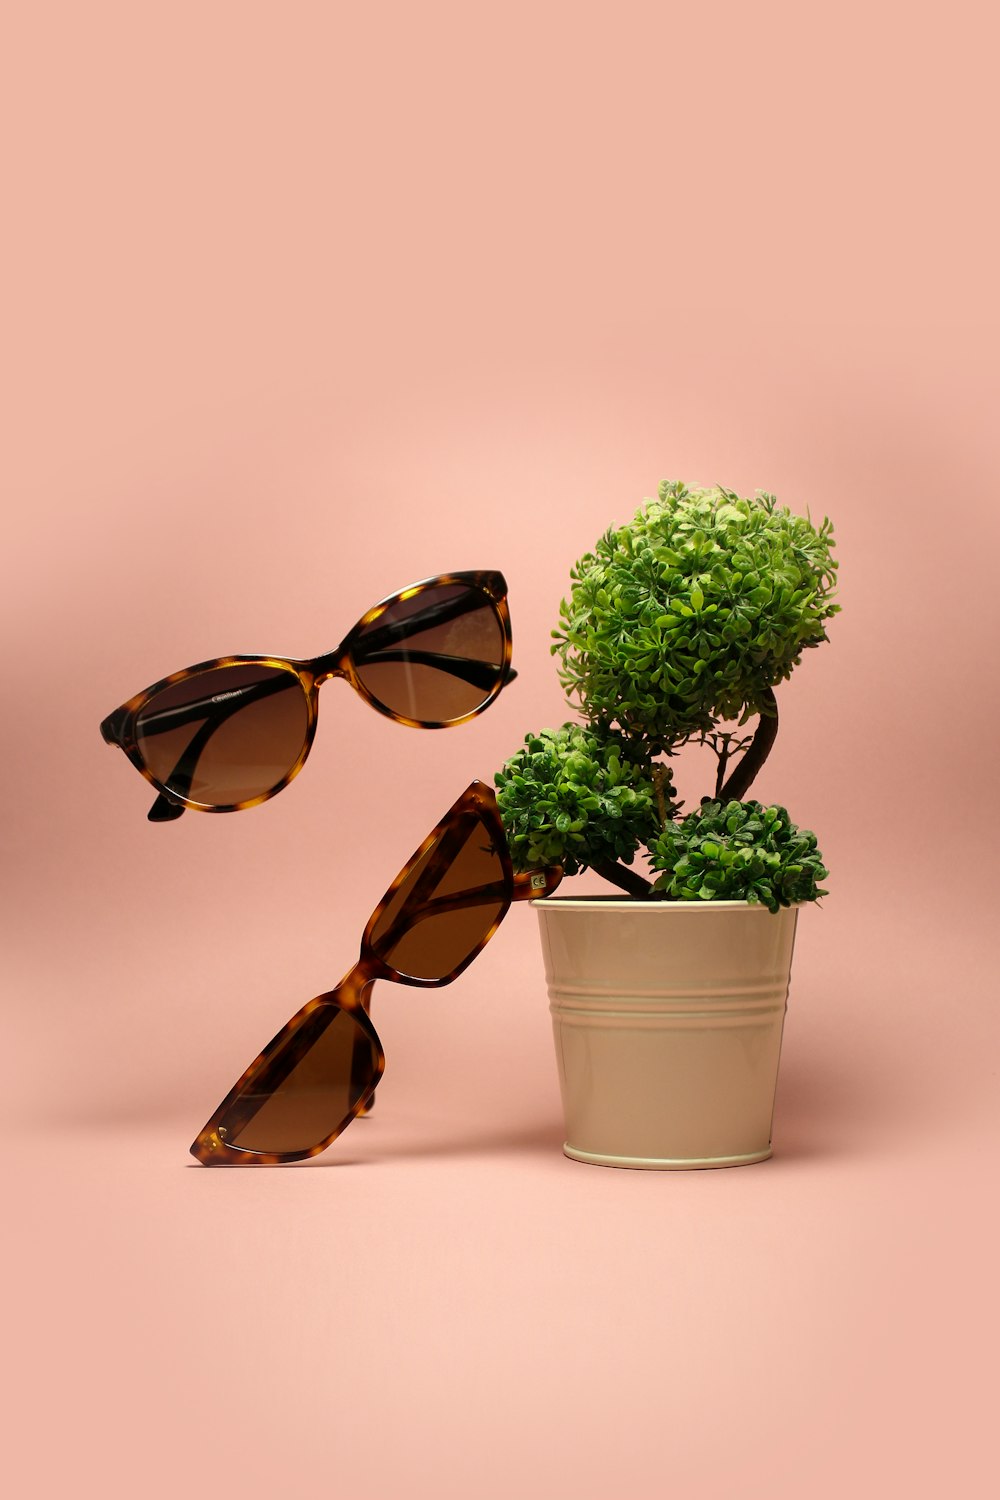 dos gafas de sol marrones junto a una planta de hojas verdes